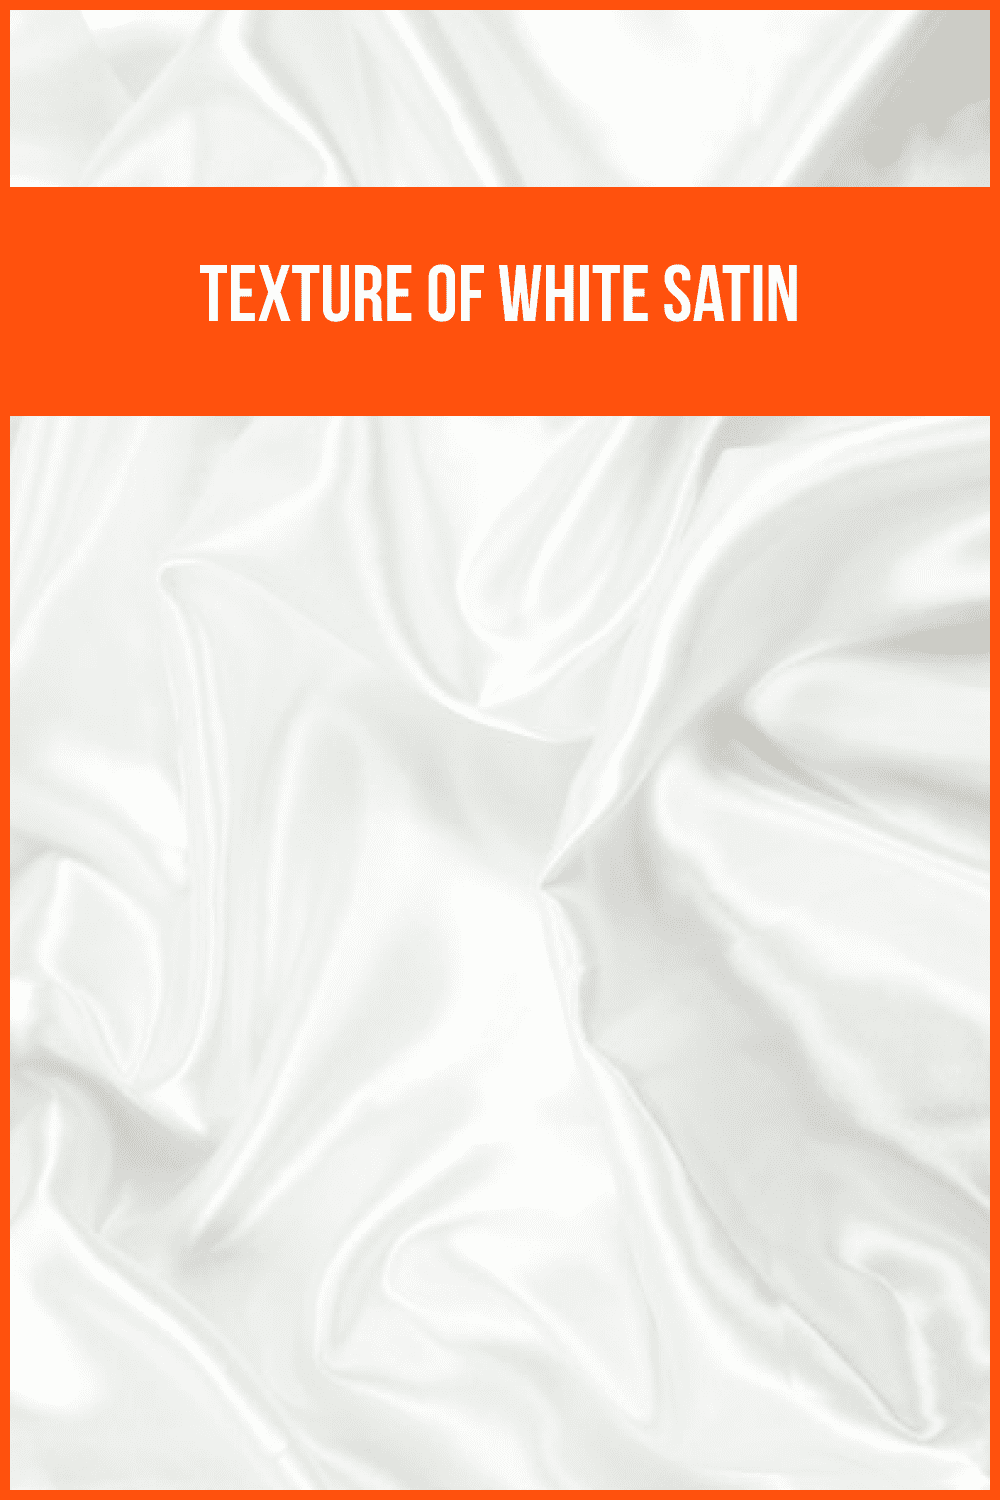 GTexture of White Satin.